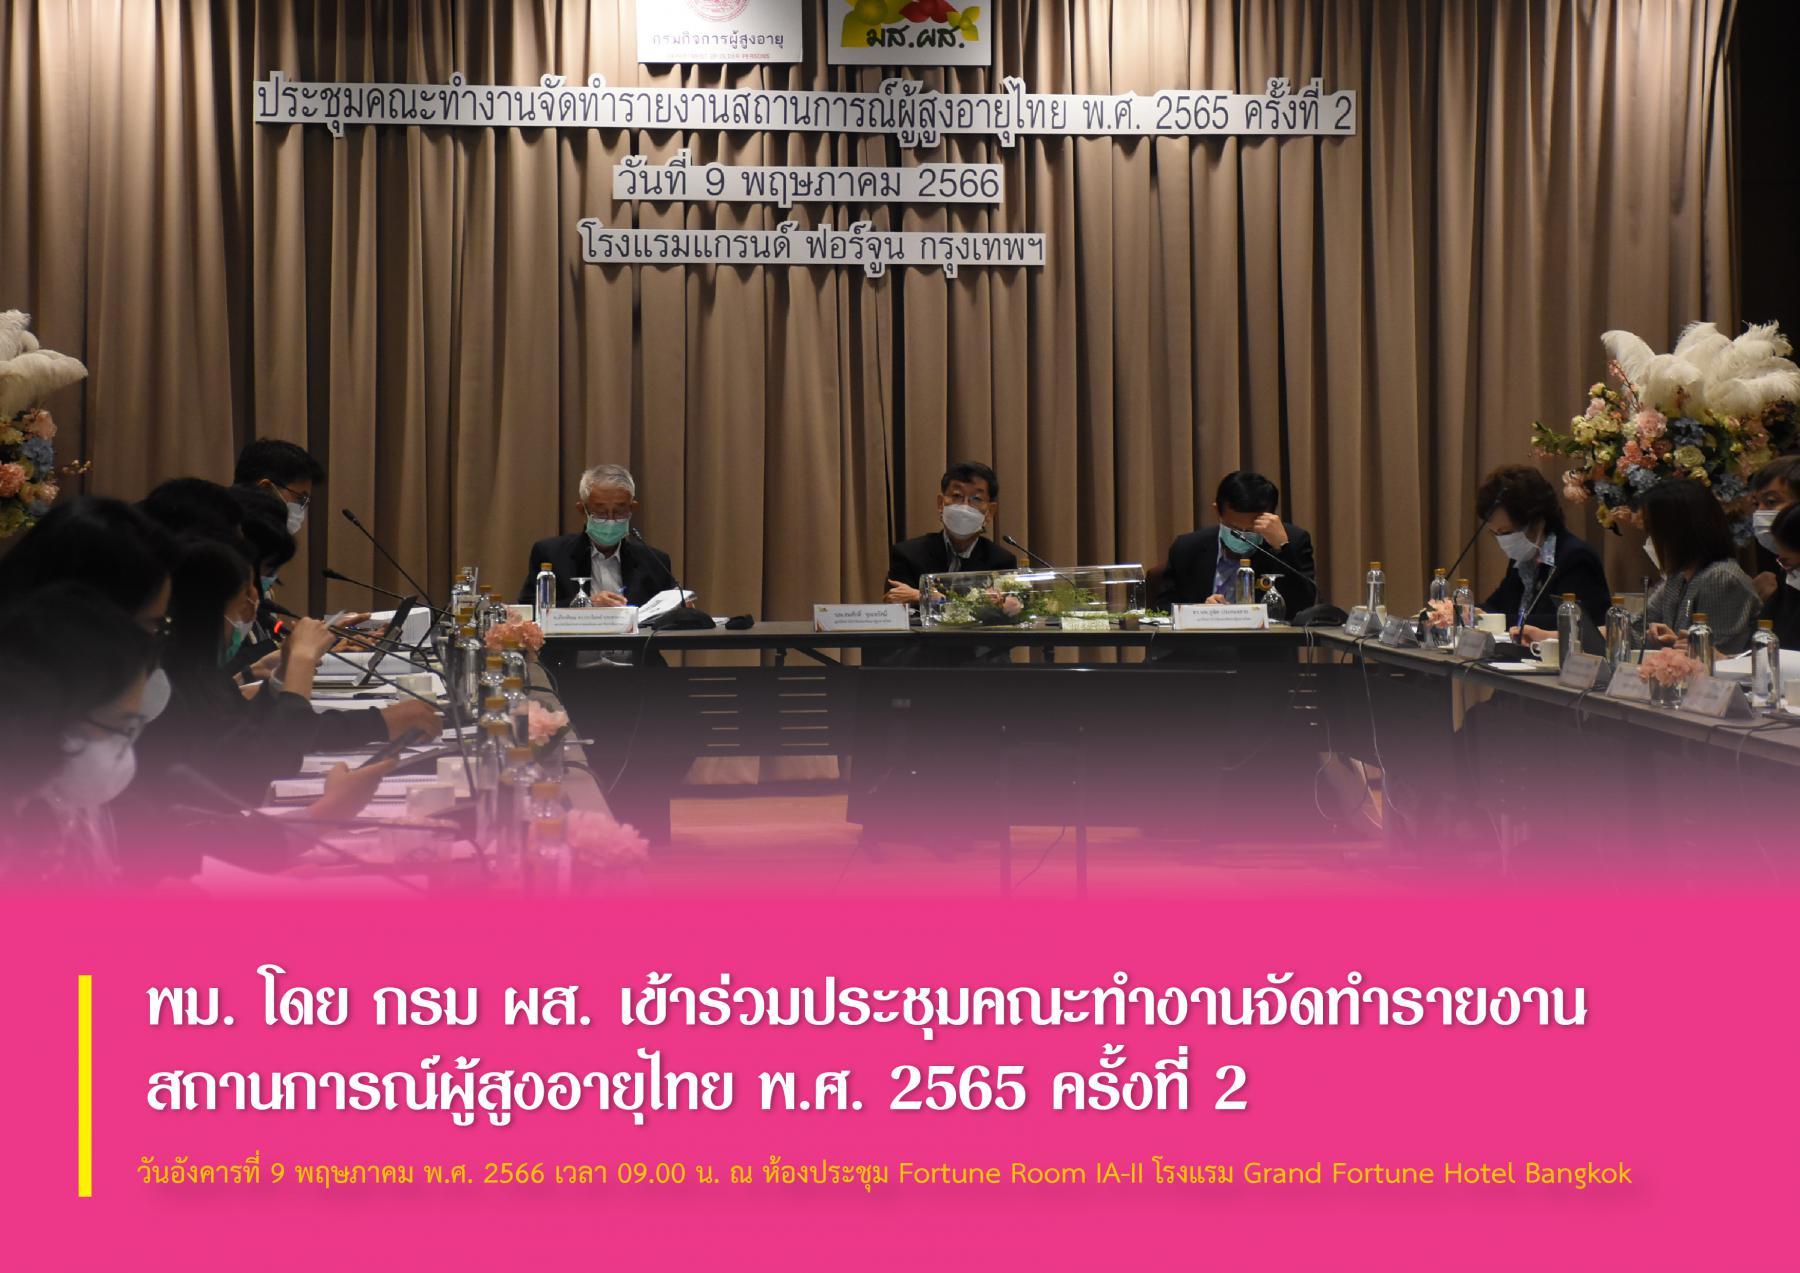 พม. โดย กรม ผส. เข้าร่วมประชุมคณะทำงานจัดทำรายงานสถานการณ์ผู้สูงอายุไทย พ.ศ. 2565 ครั้งที่ 2 